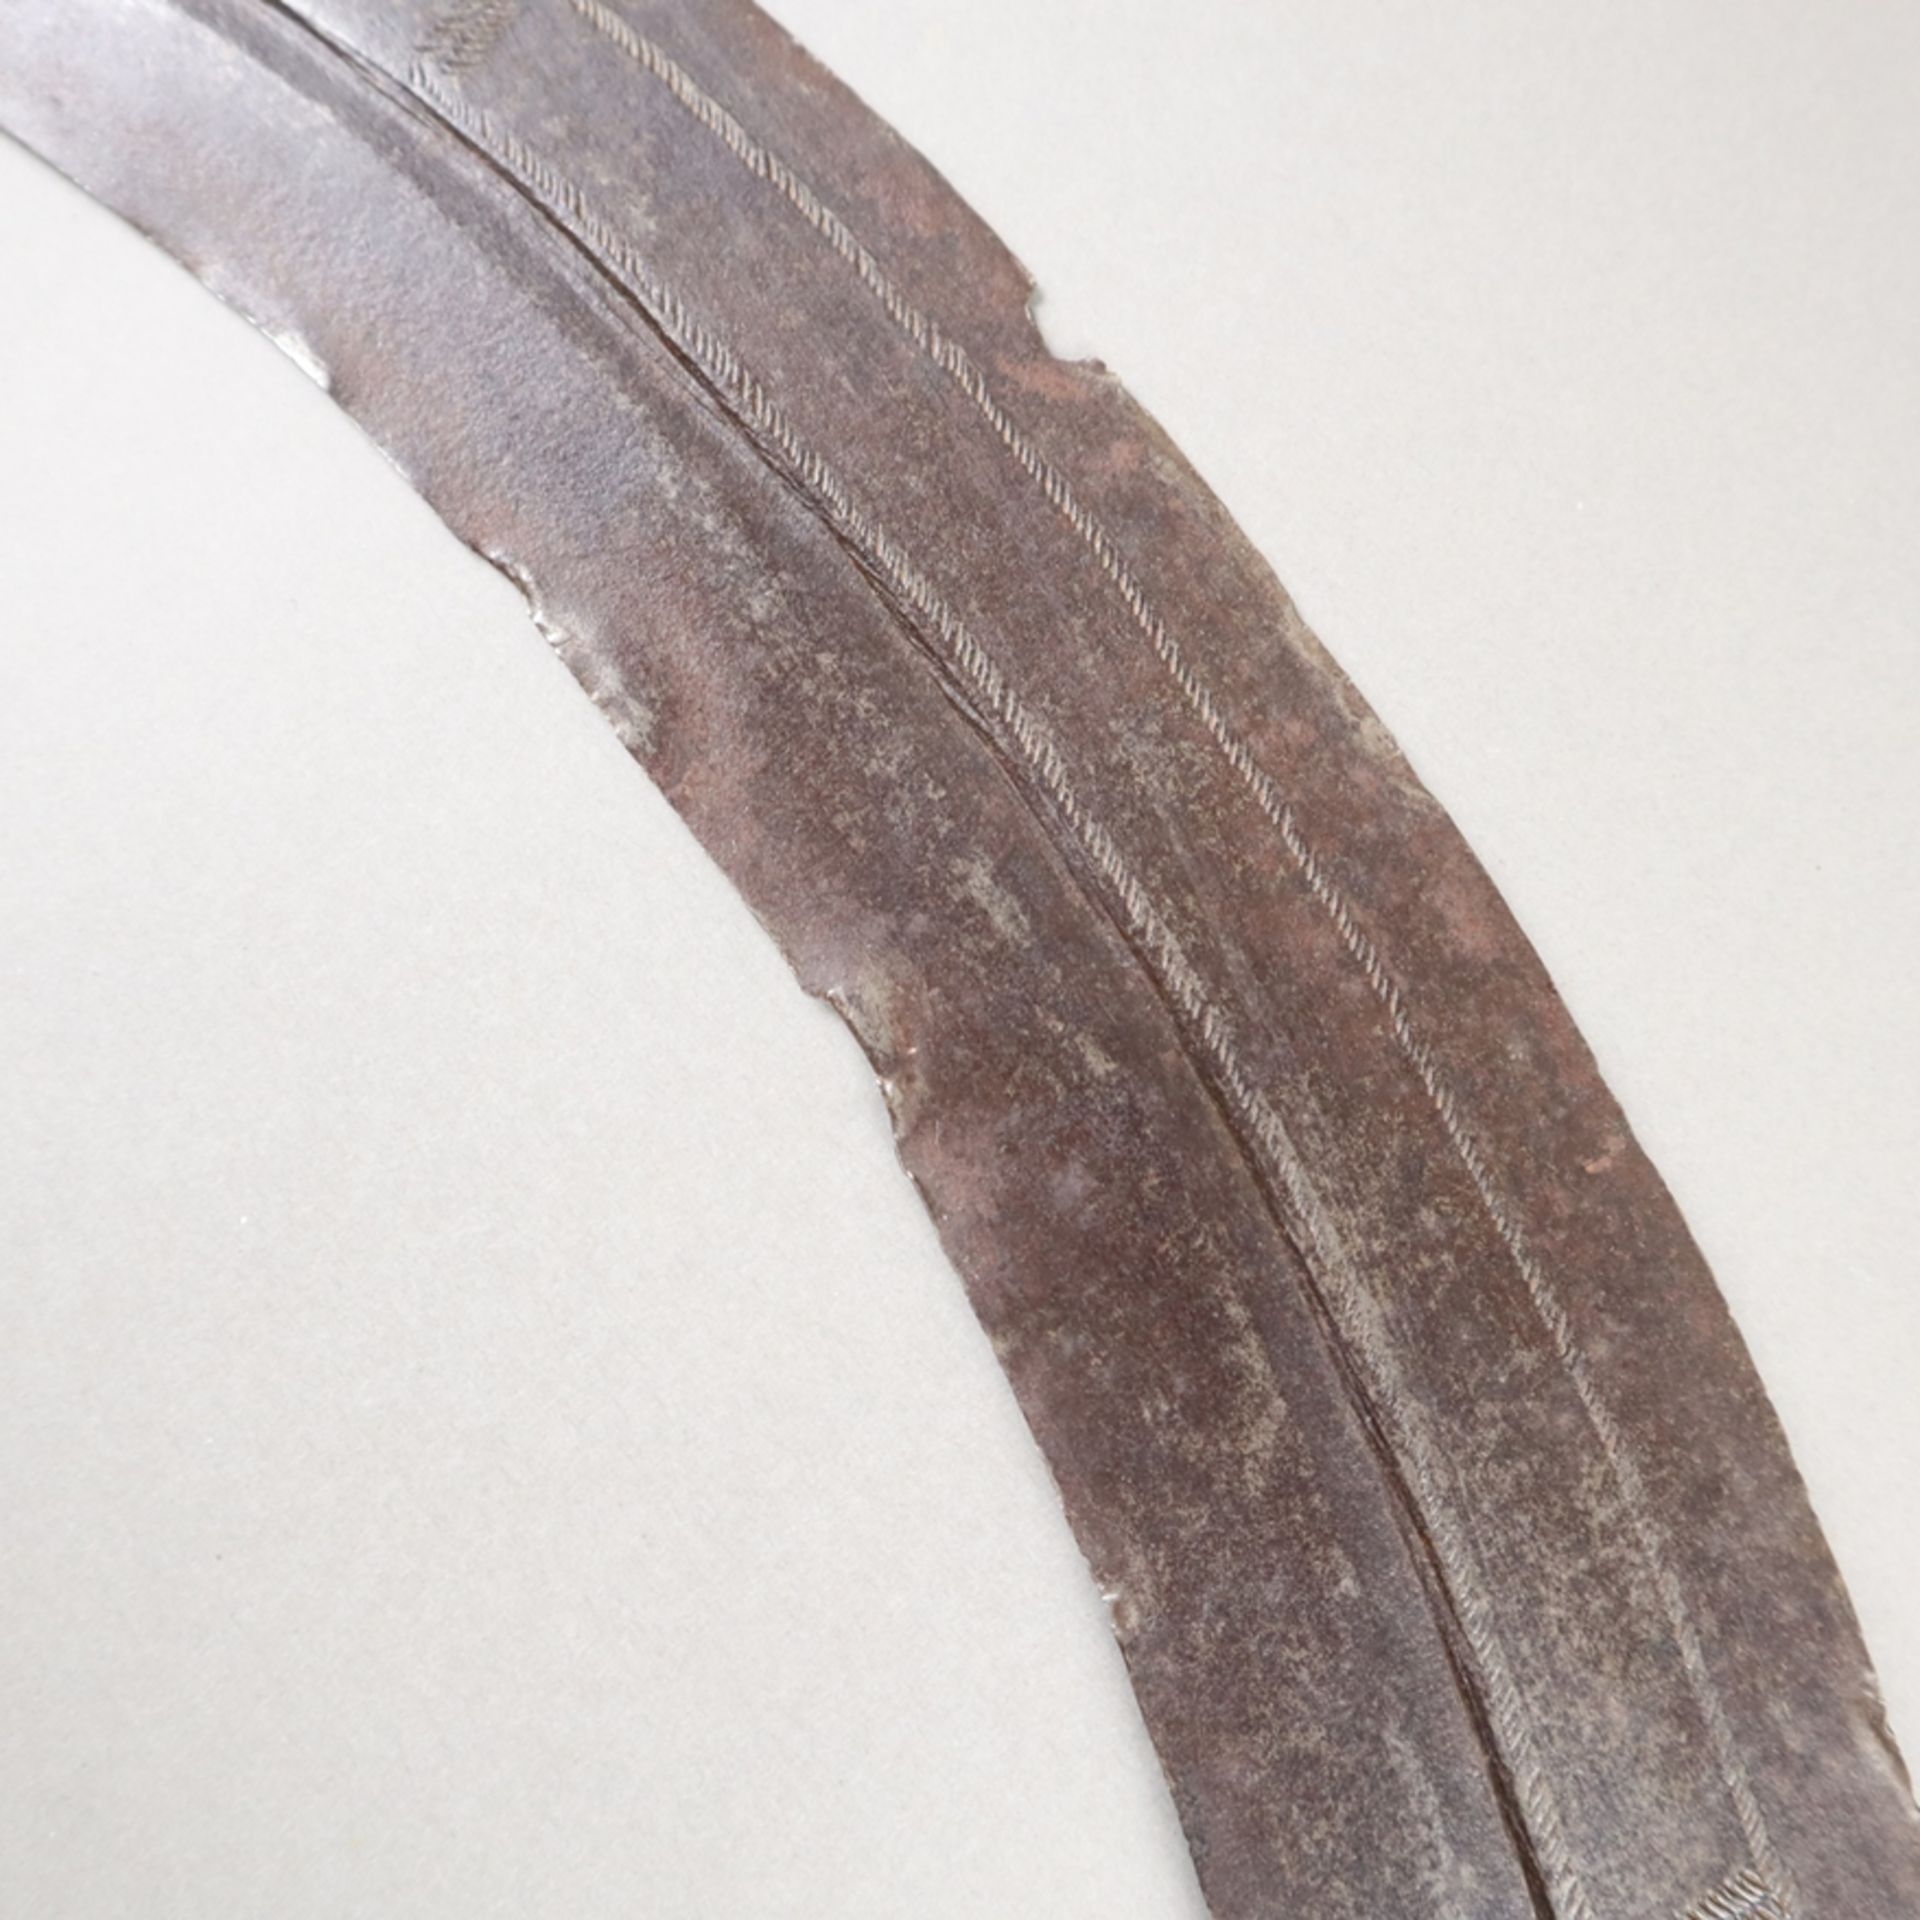 Afrikanisches Krummschwert - Gurade?, wohl Abessinien, breite stark gebogte Eis - Bild 3 aus 7